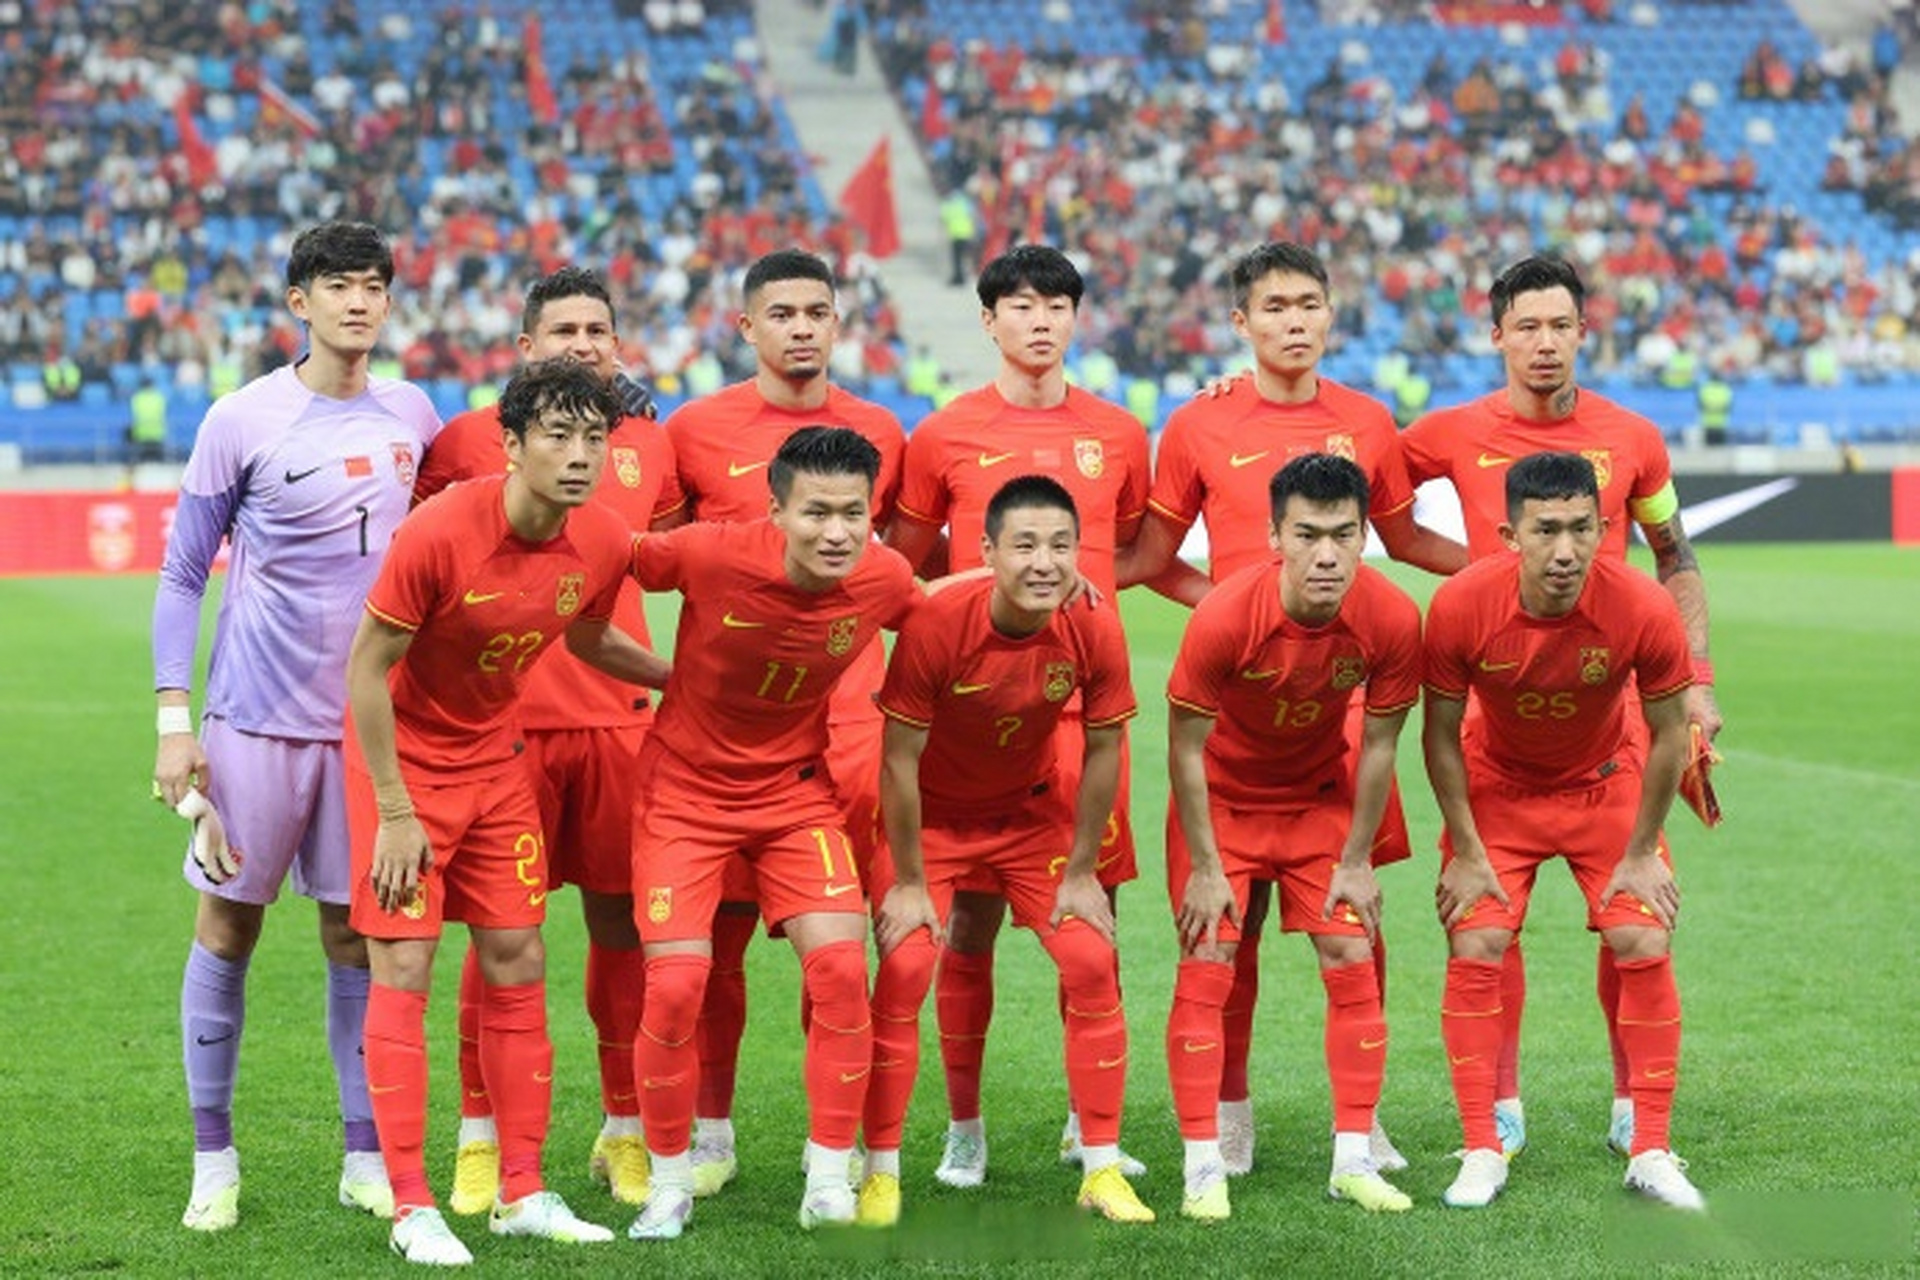 【国际足球邀请赛中国队2比0胜巴勒斯坦队】6月20日,在辽宁大连举行的